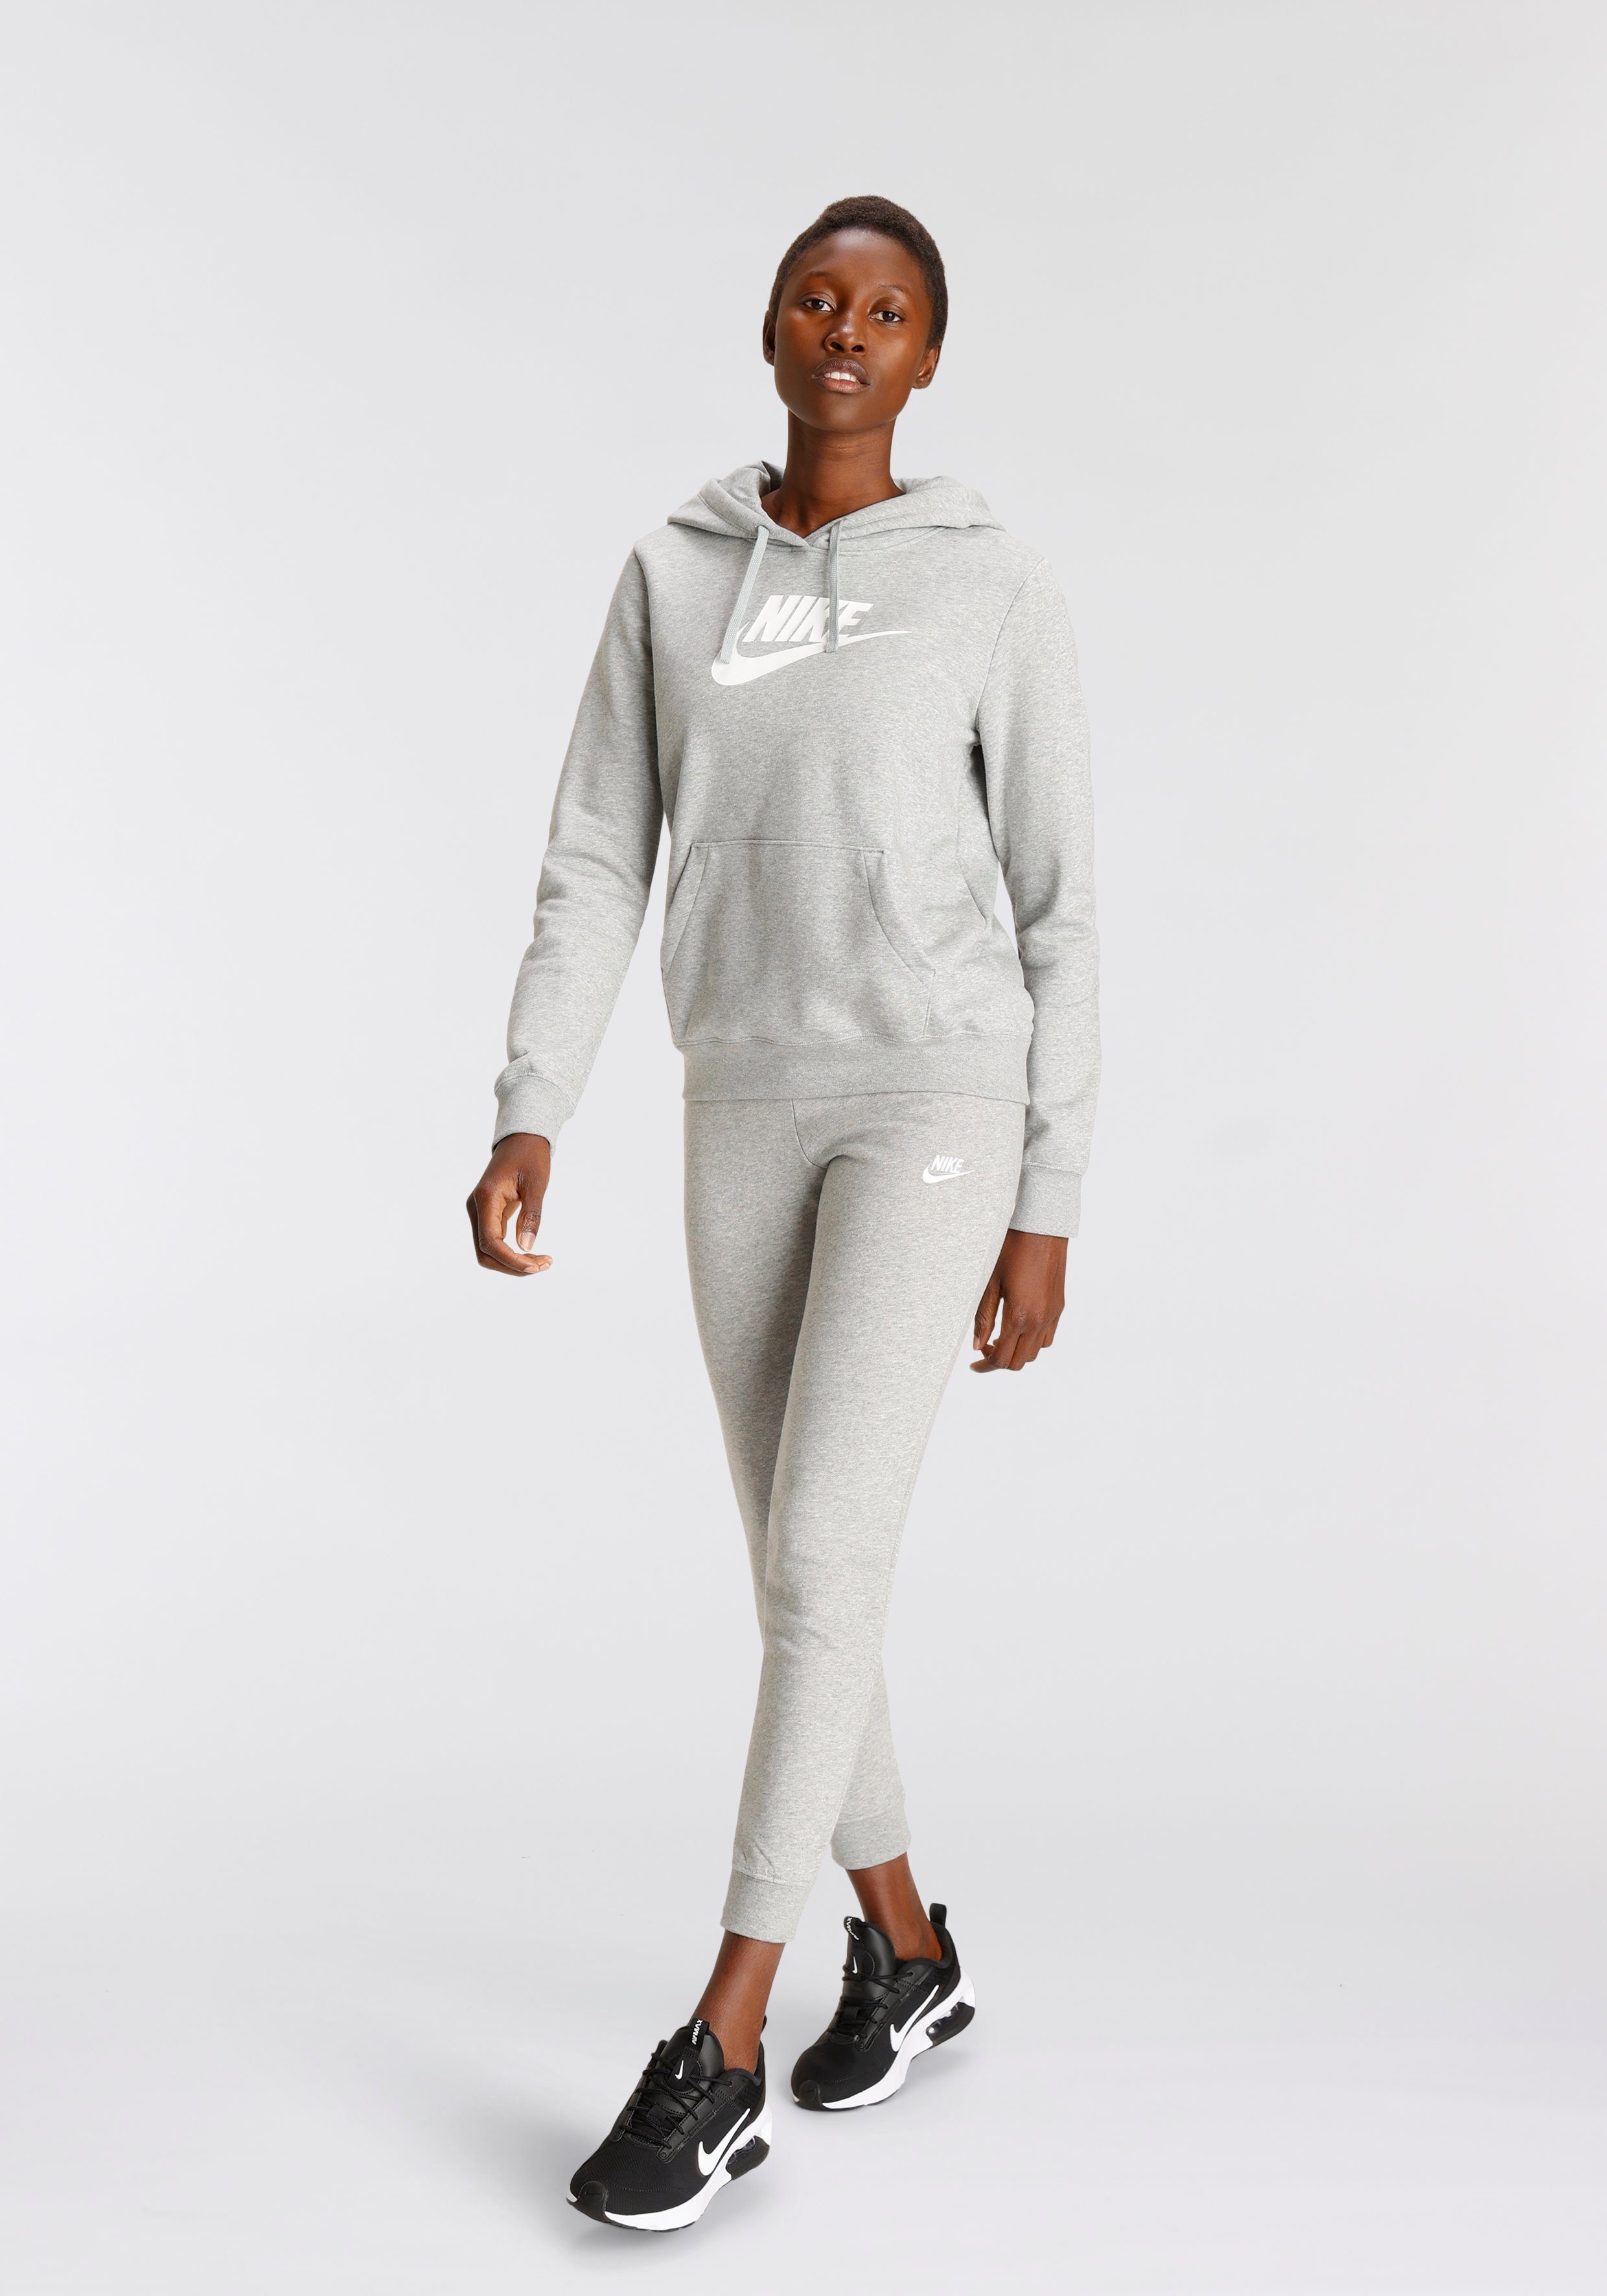 Nike Sportswear Kapuzensweatshirt »Club Fleece Women's Pullover Hoodie  (Plus Size)«